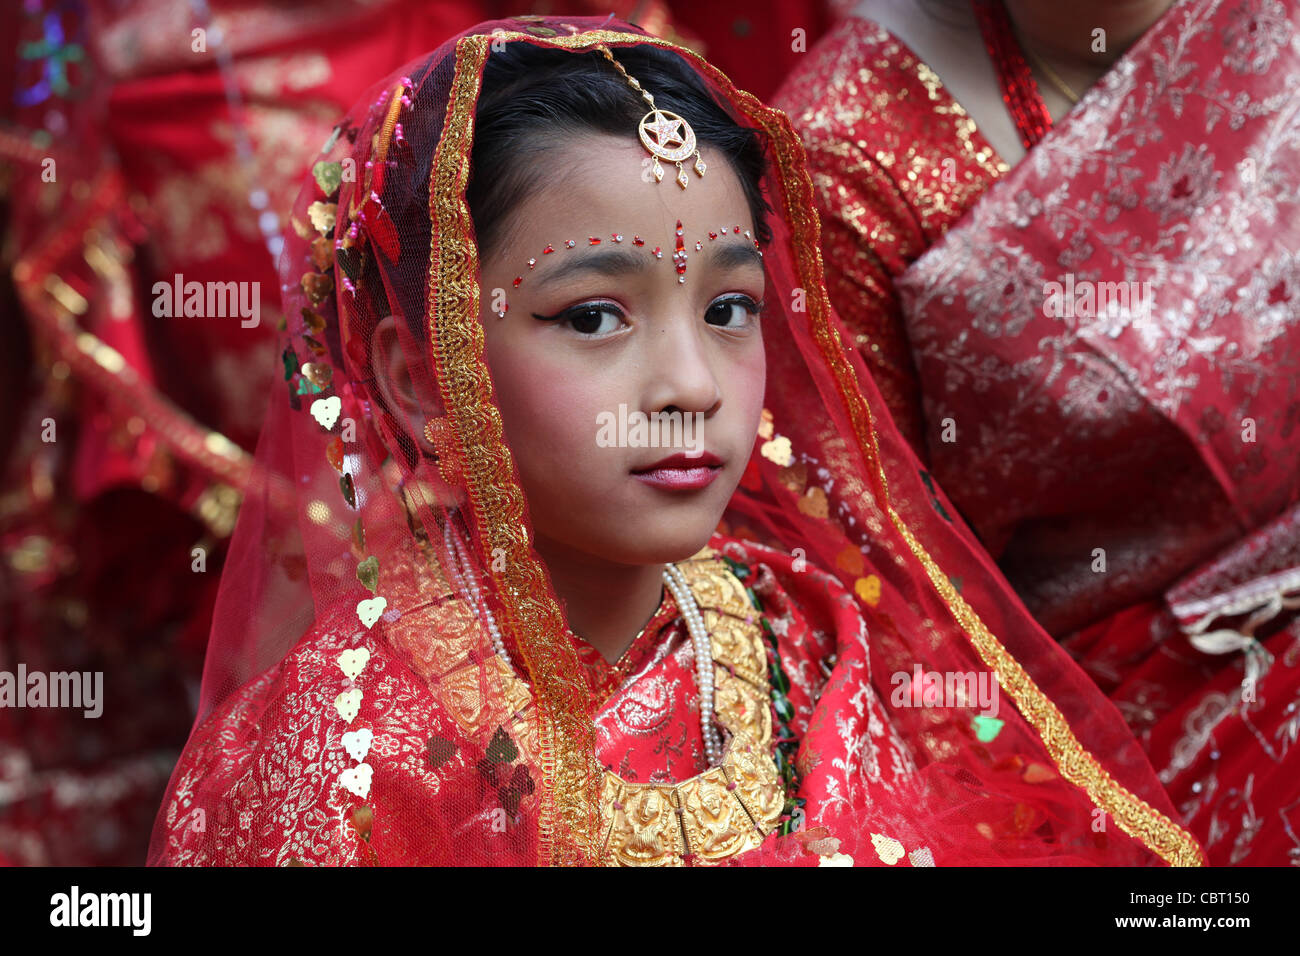 Cérémonie traditionnelle Hindu Rite de passage pour les jeunes filles népalaises Banque D'Images